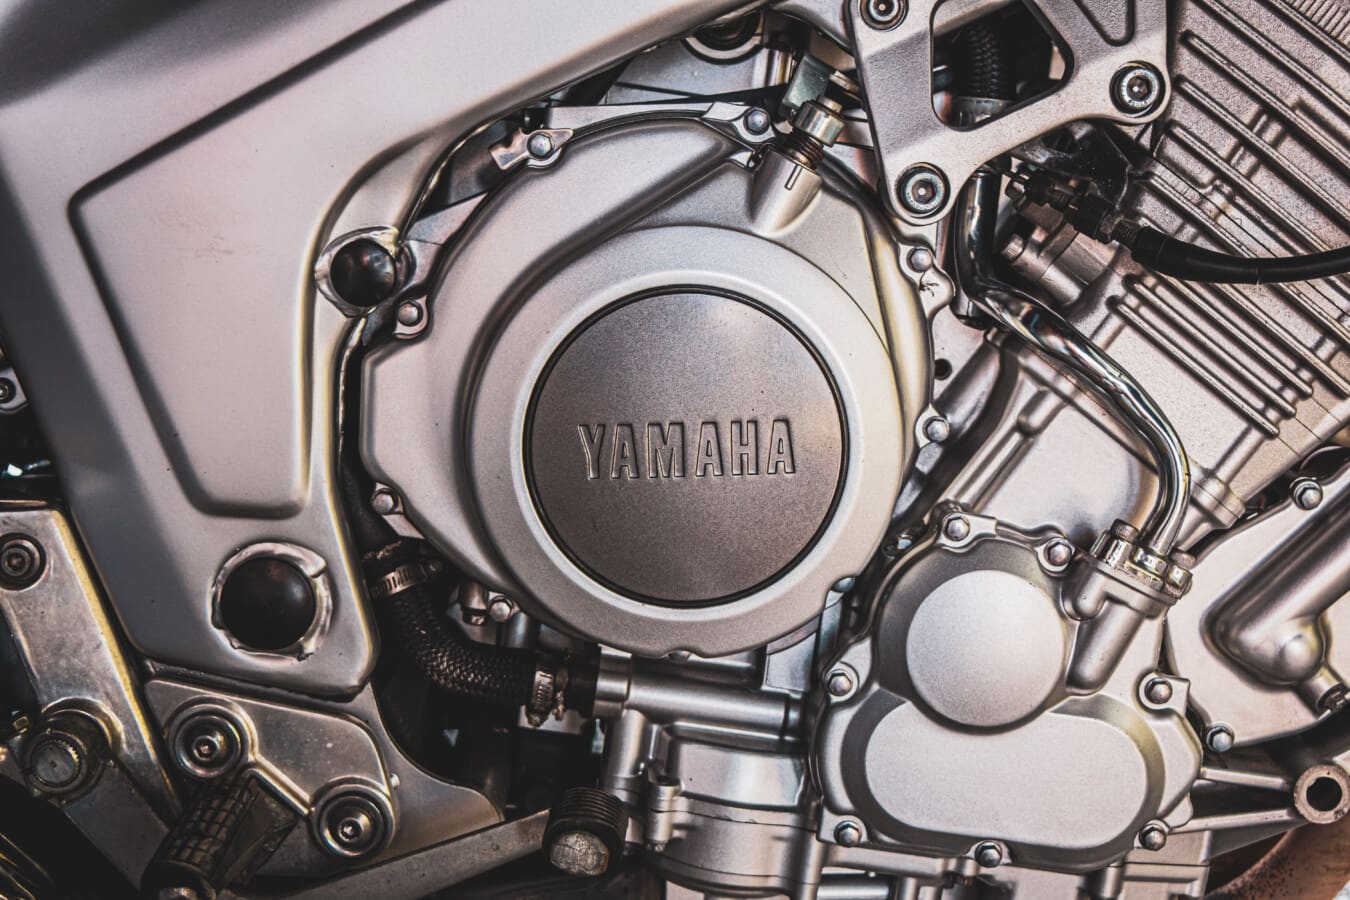 Yamaha, motocyklu, motor, kovové, chrom, inženýrství, opravna, technologie, průmysl, elektronika